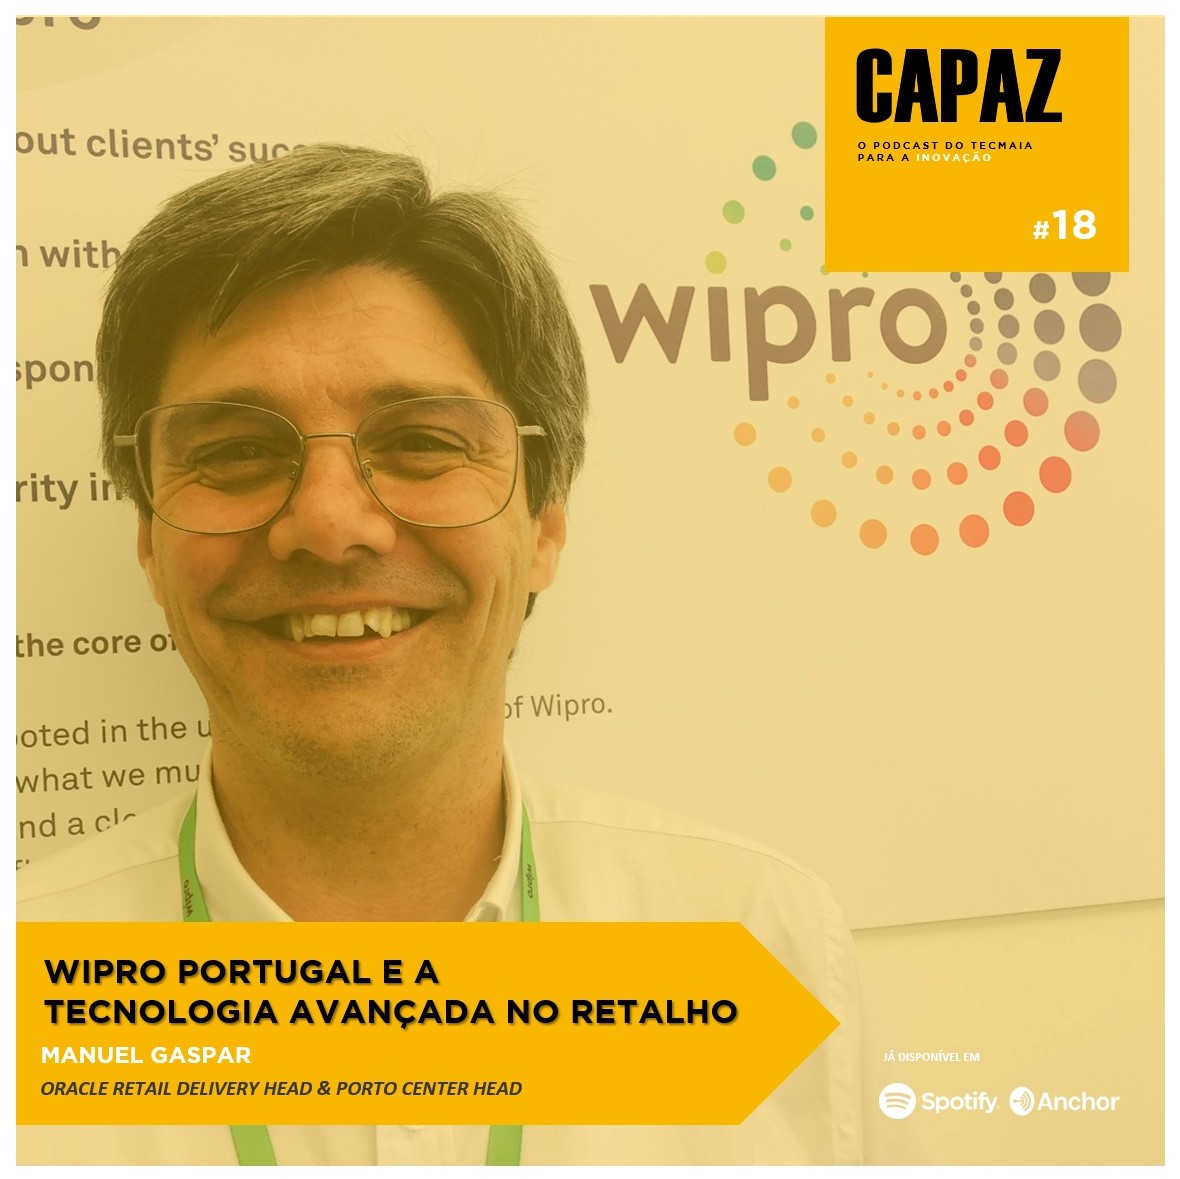 CAPAZ #18 - Wipro e a tecnologia avançada no Retalho